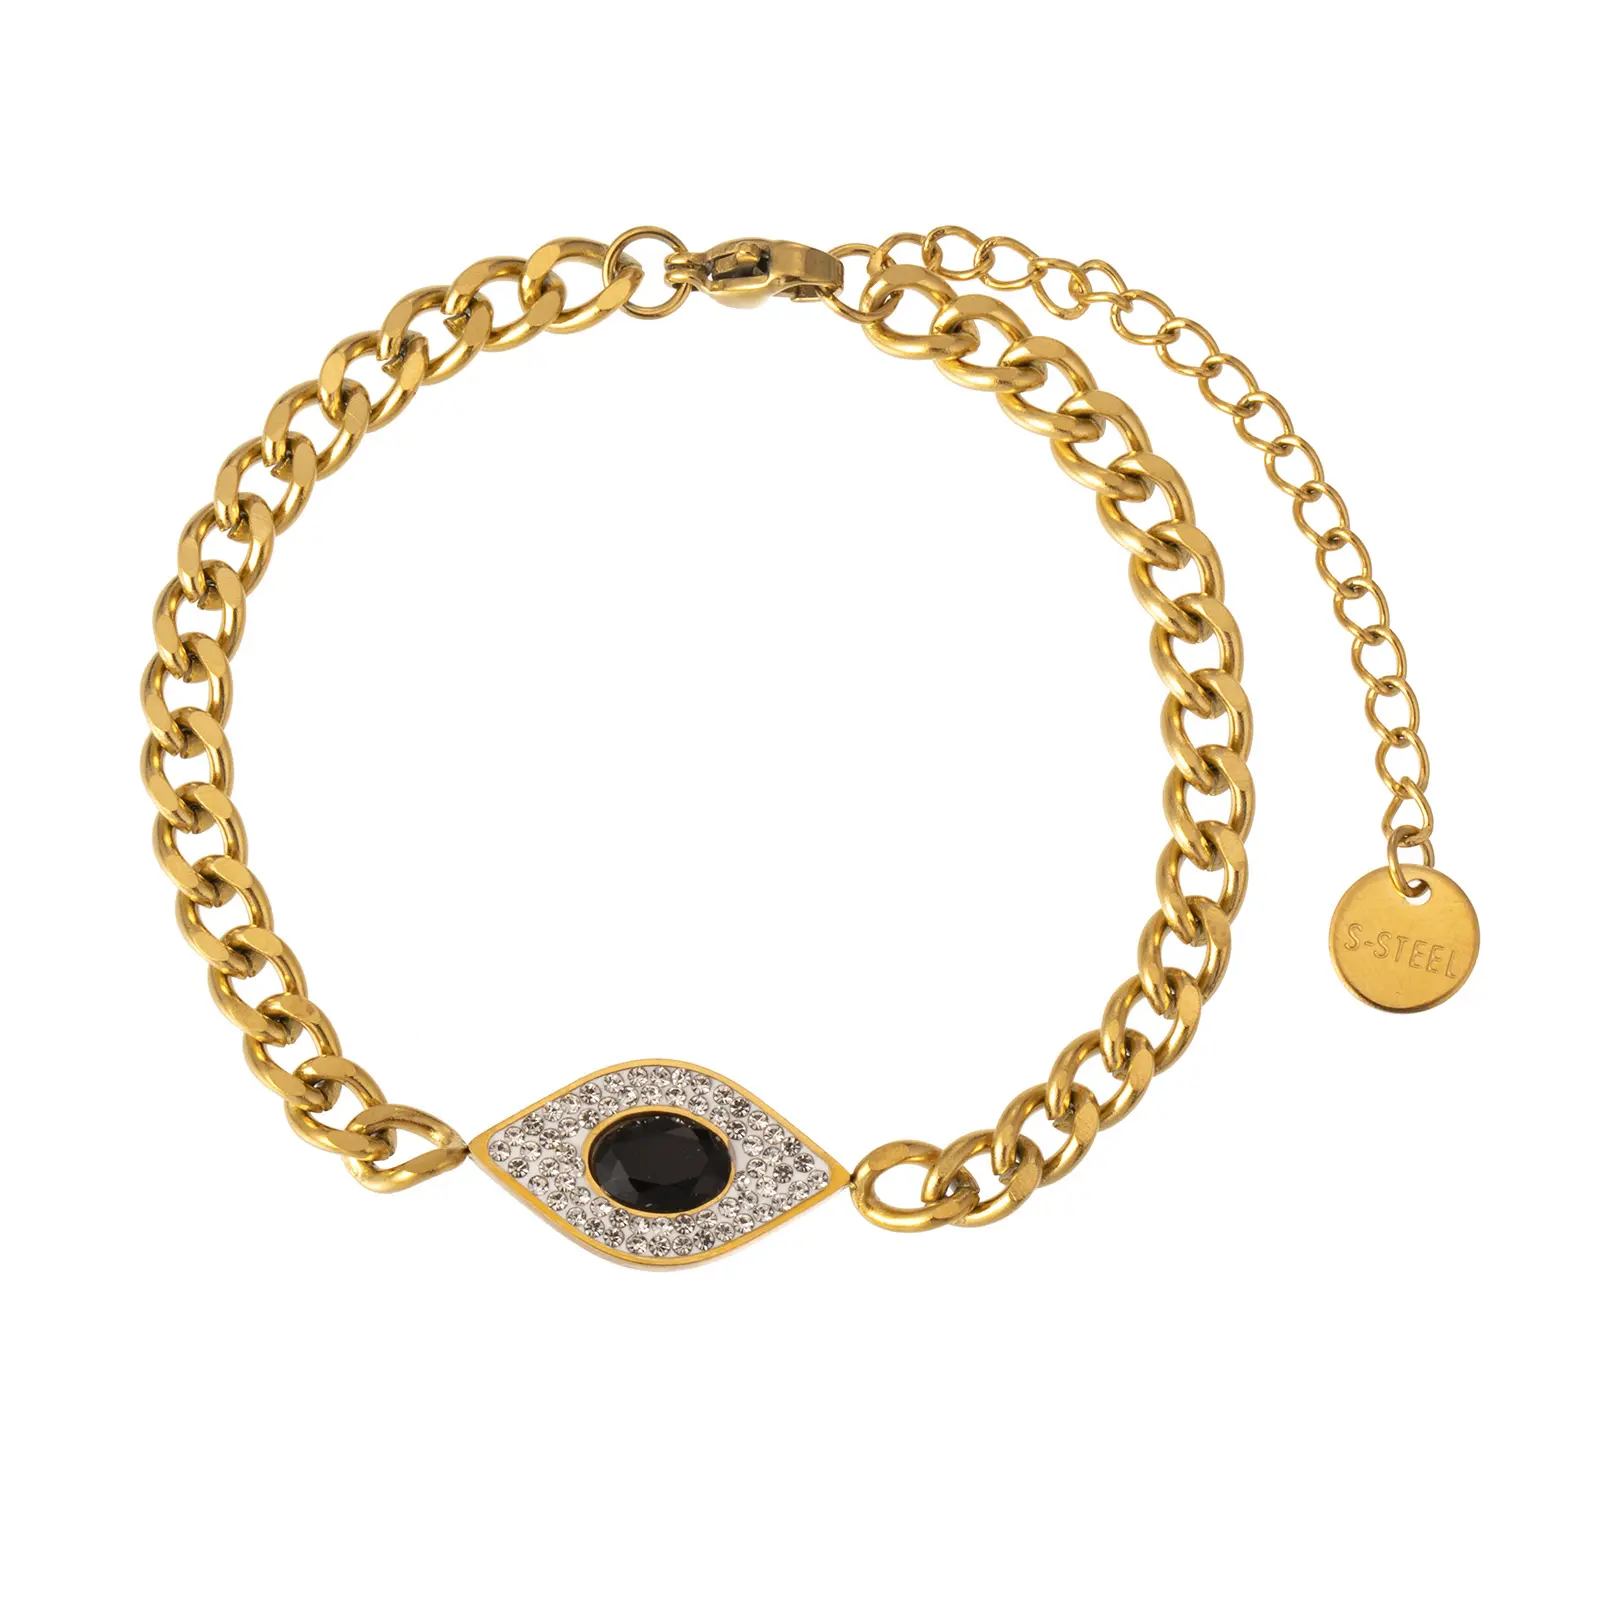 ISimple Design 18K Gold Plating Evil Eyes Charm Bracelet Stainless Steel Circle Chain Zircon Blue Eyes Bracelet